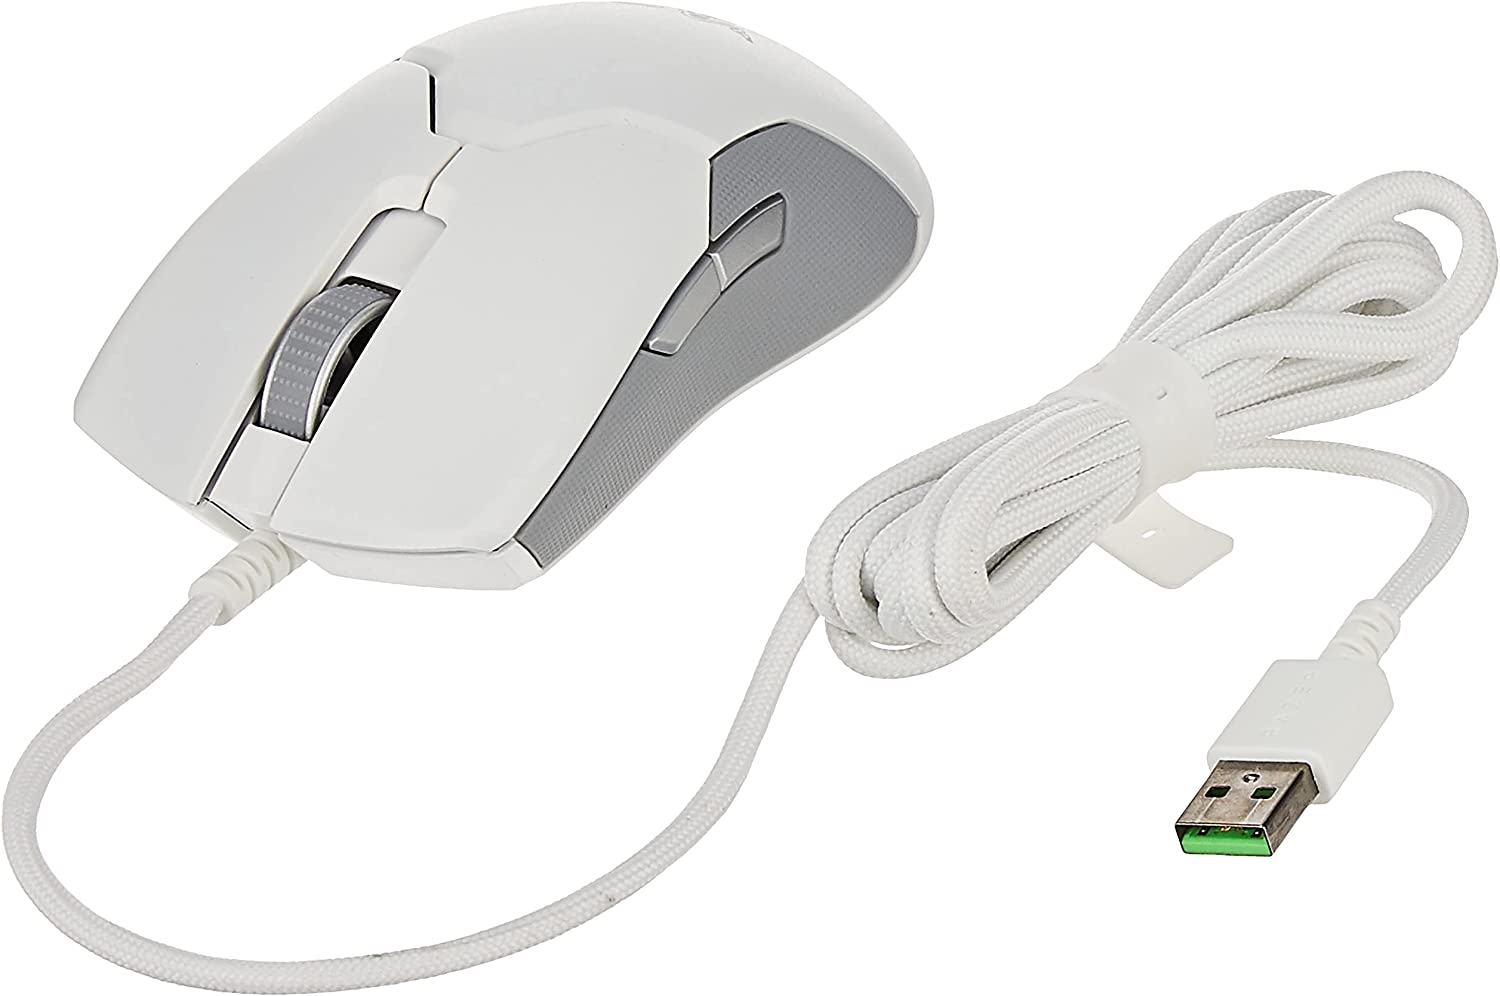 موس Razer Viper Ultralight Ambidextrous Wired Gaming Mouse white